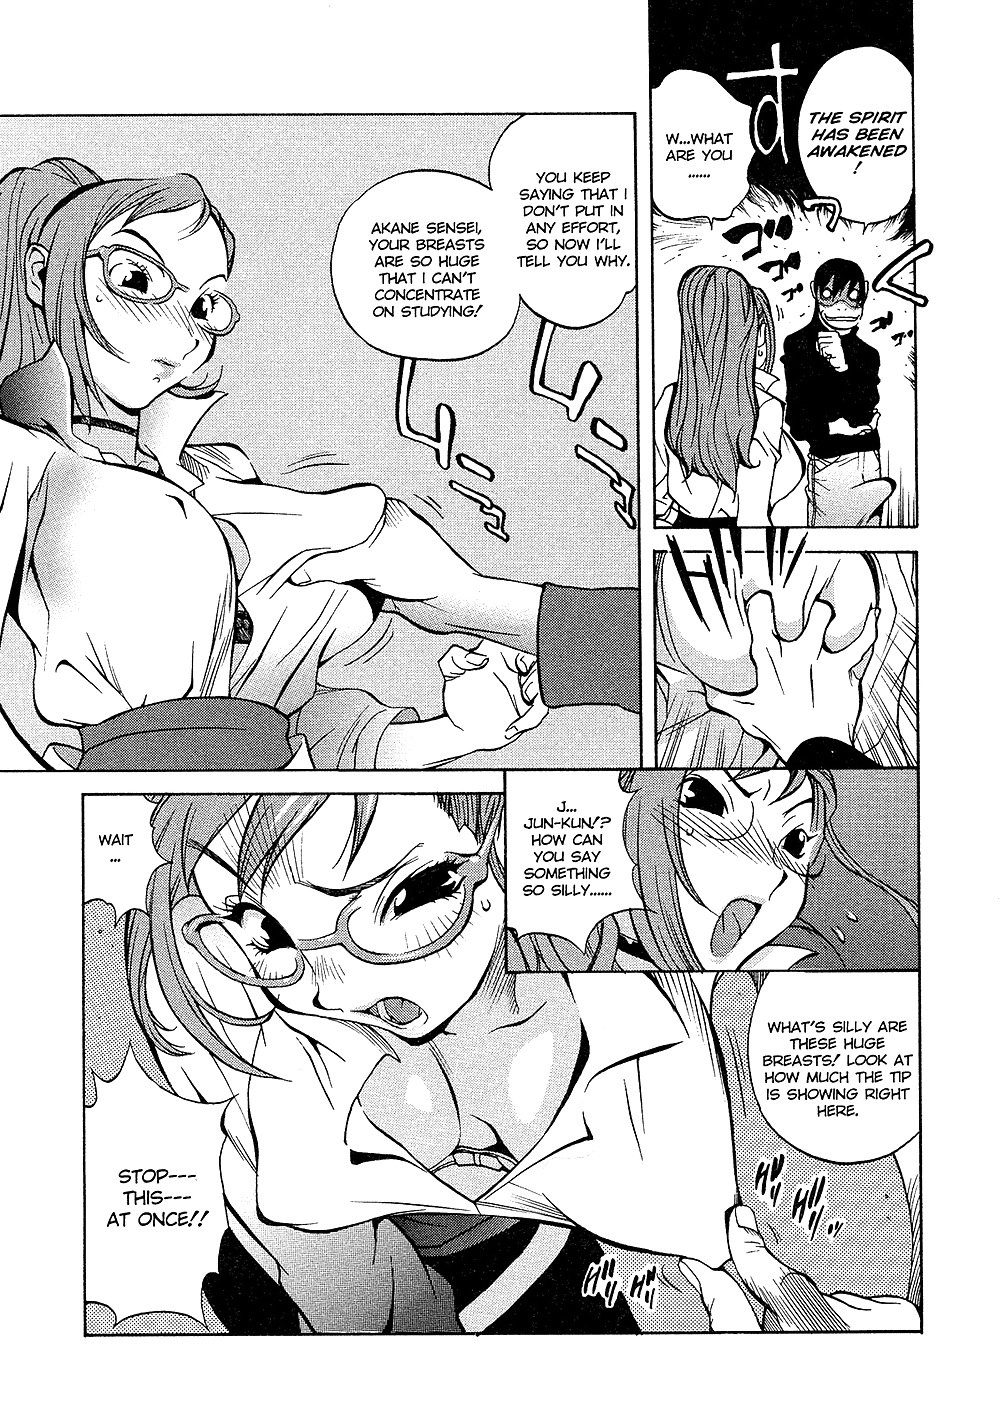 (comic hentai) yumisuke kotoyoshi erotic works #2
 #21623316